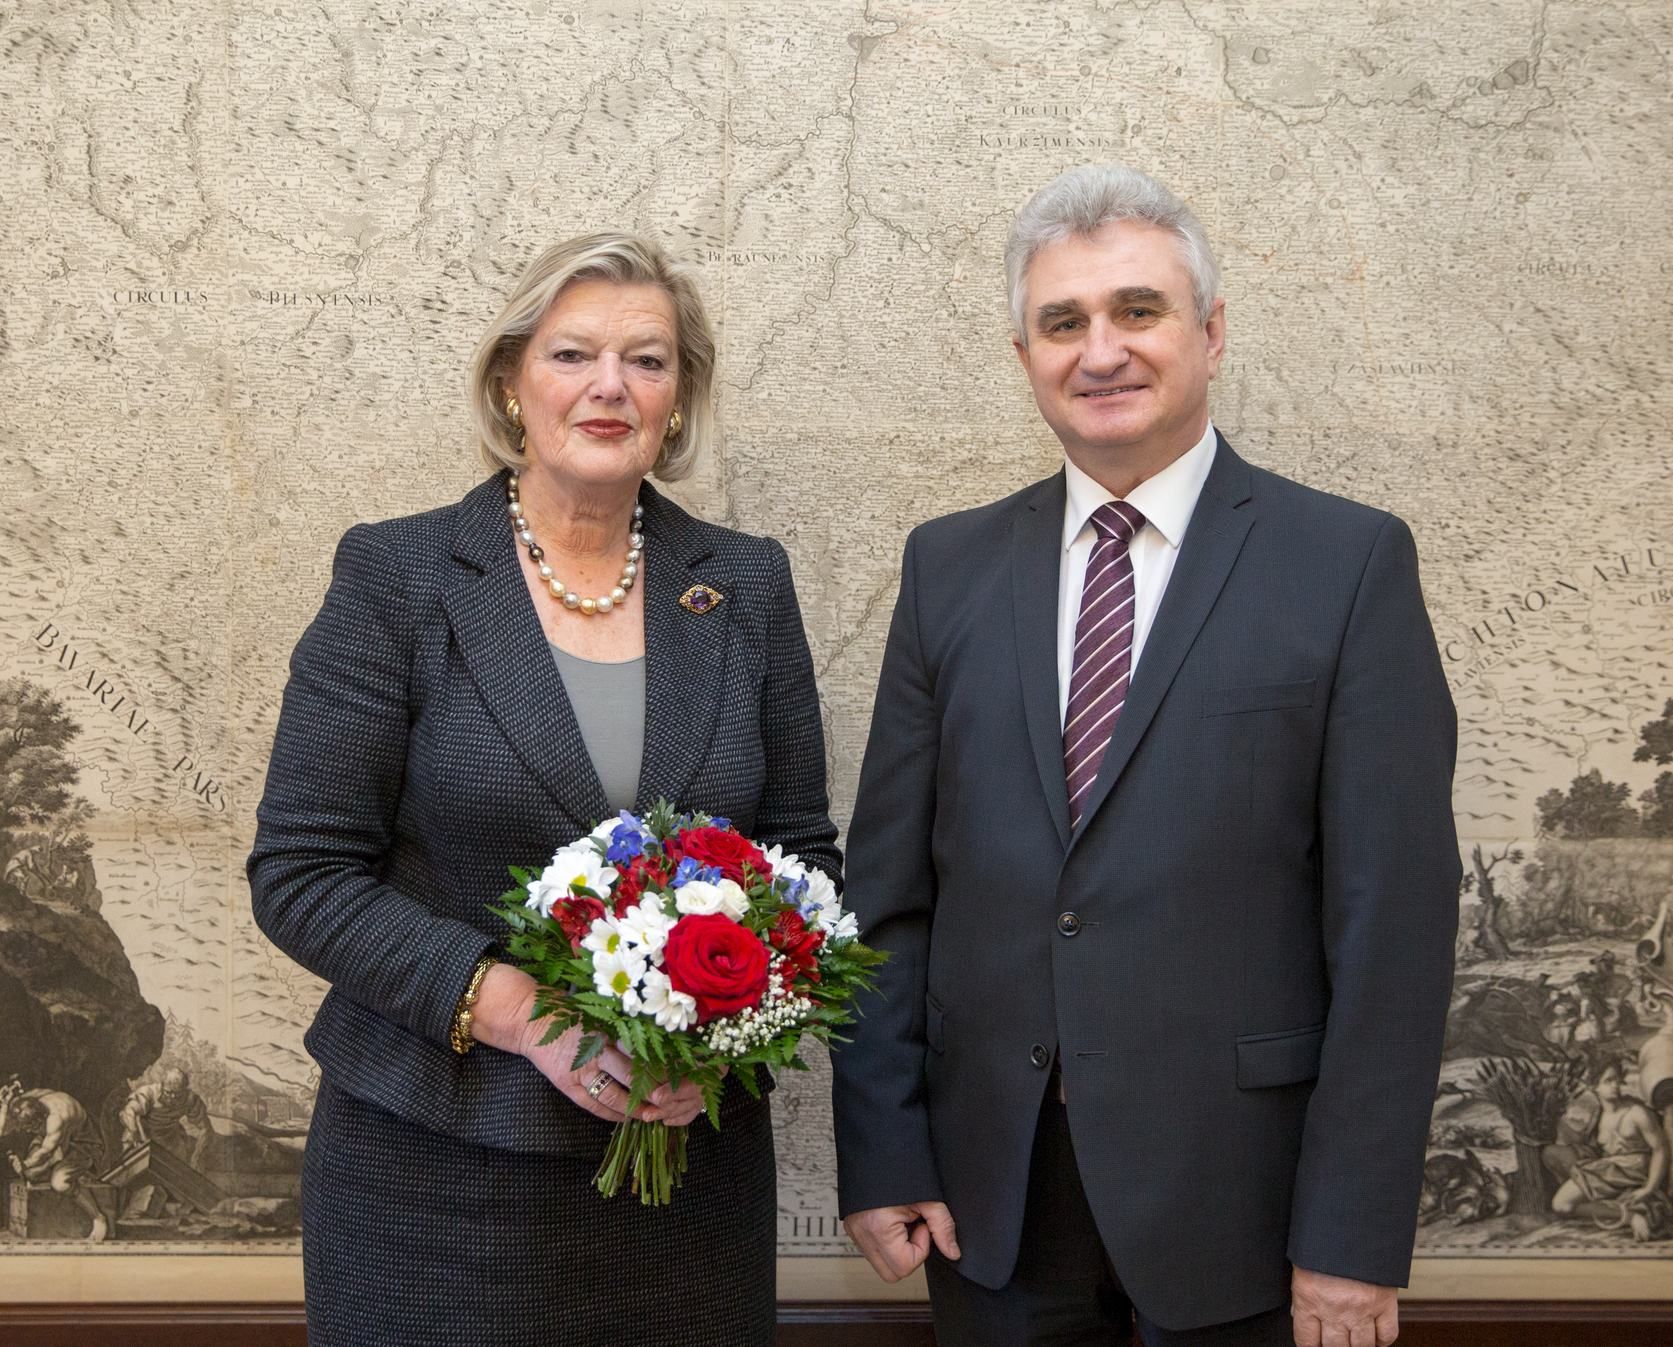 Předsedkyně šéfka nizozemského Senátu Ankie Broekers-Knol s předsedou českého Senátu Milanem Štěchem